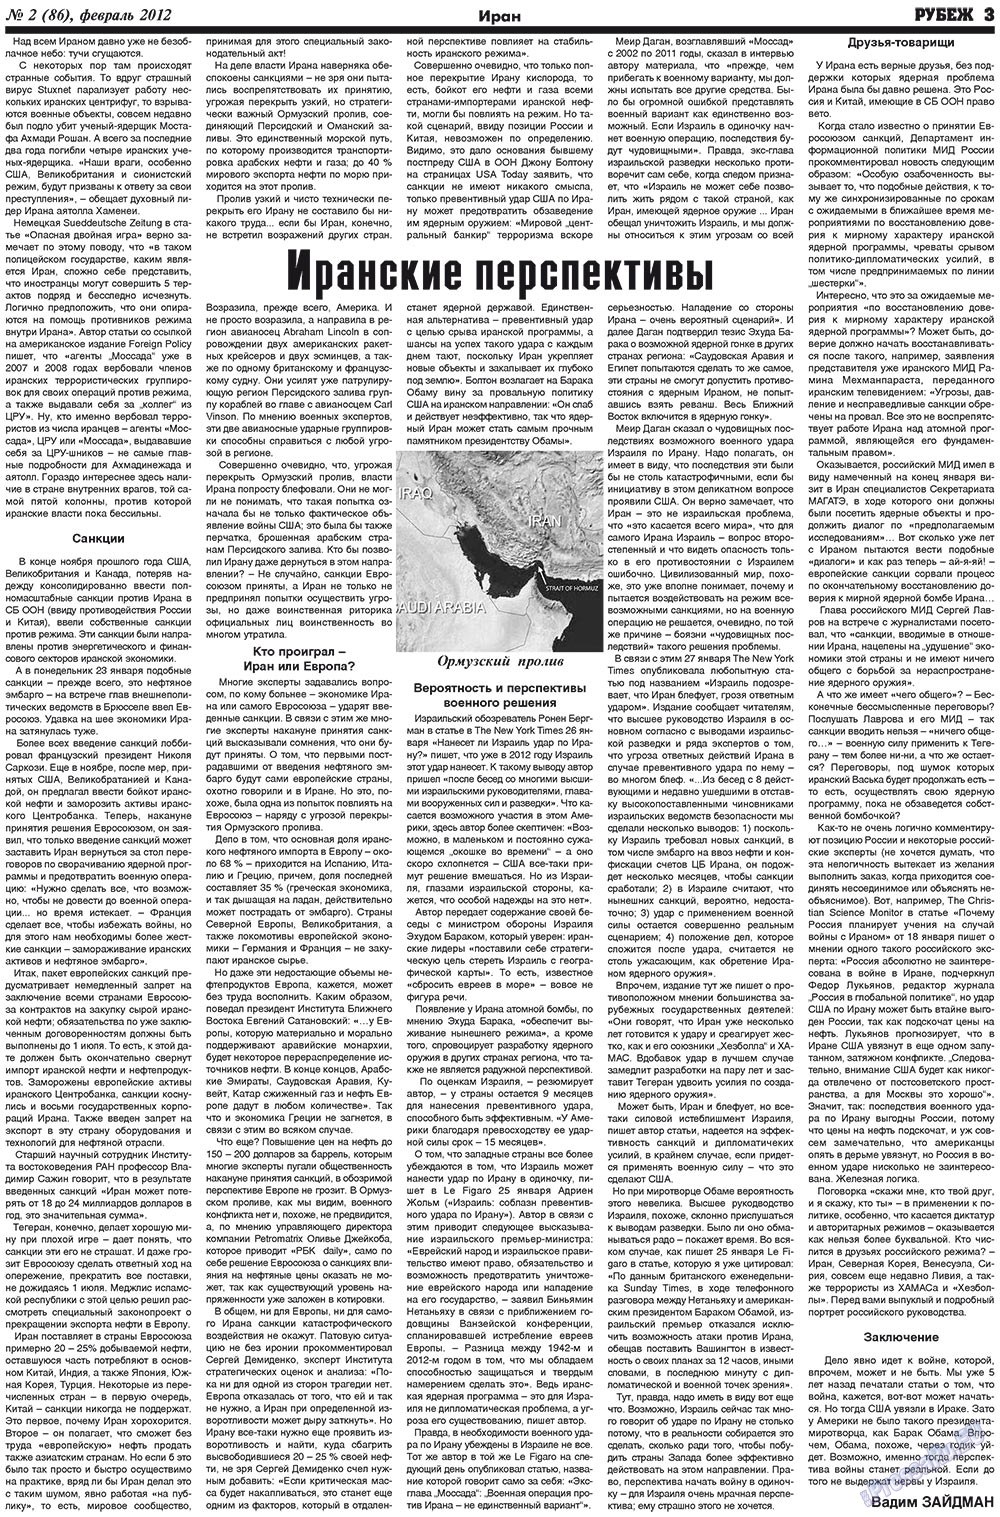 Рубеж (газета). 2012 год, номер 2, стр. 3